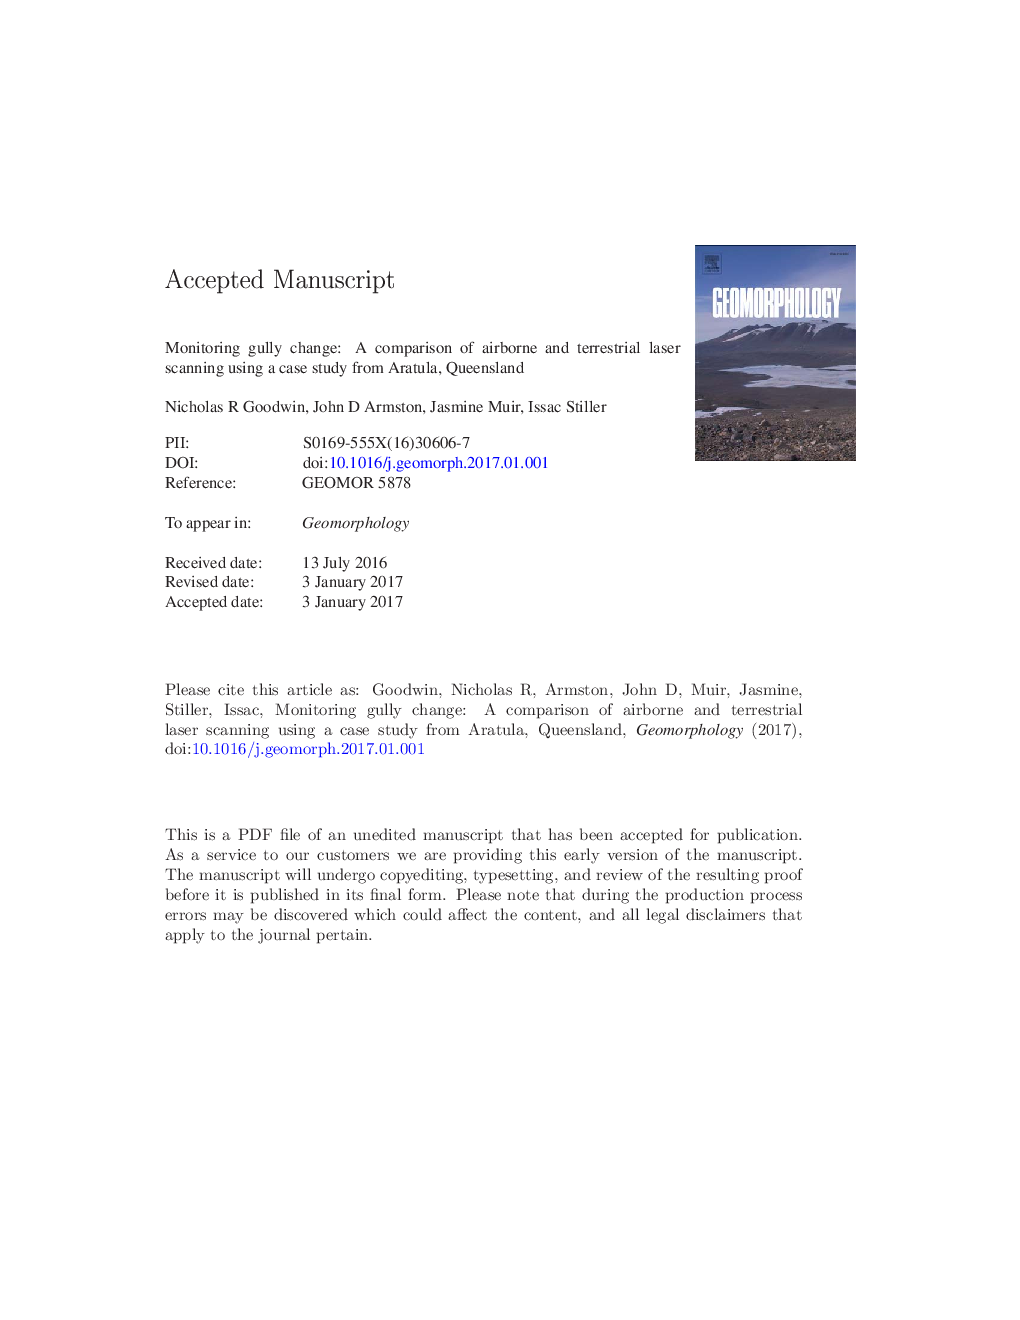 تغییرات تغییرات جابجایی: مقایسه اسکن لیزر هوایی و زمینی با استفاده از یک مطالعه موردی از آراتولا، کوئینزلند